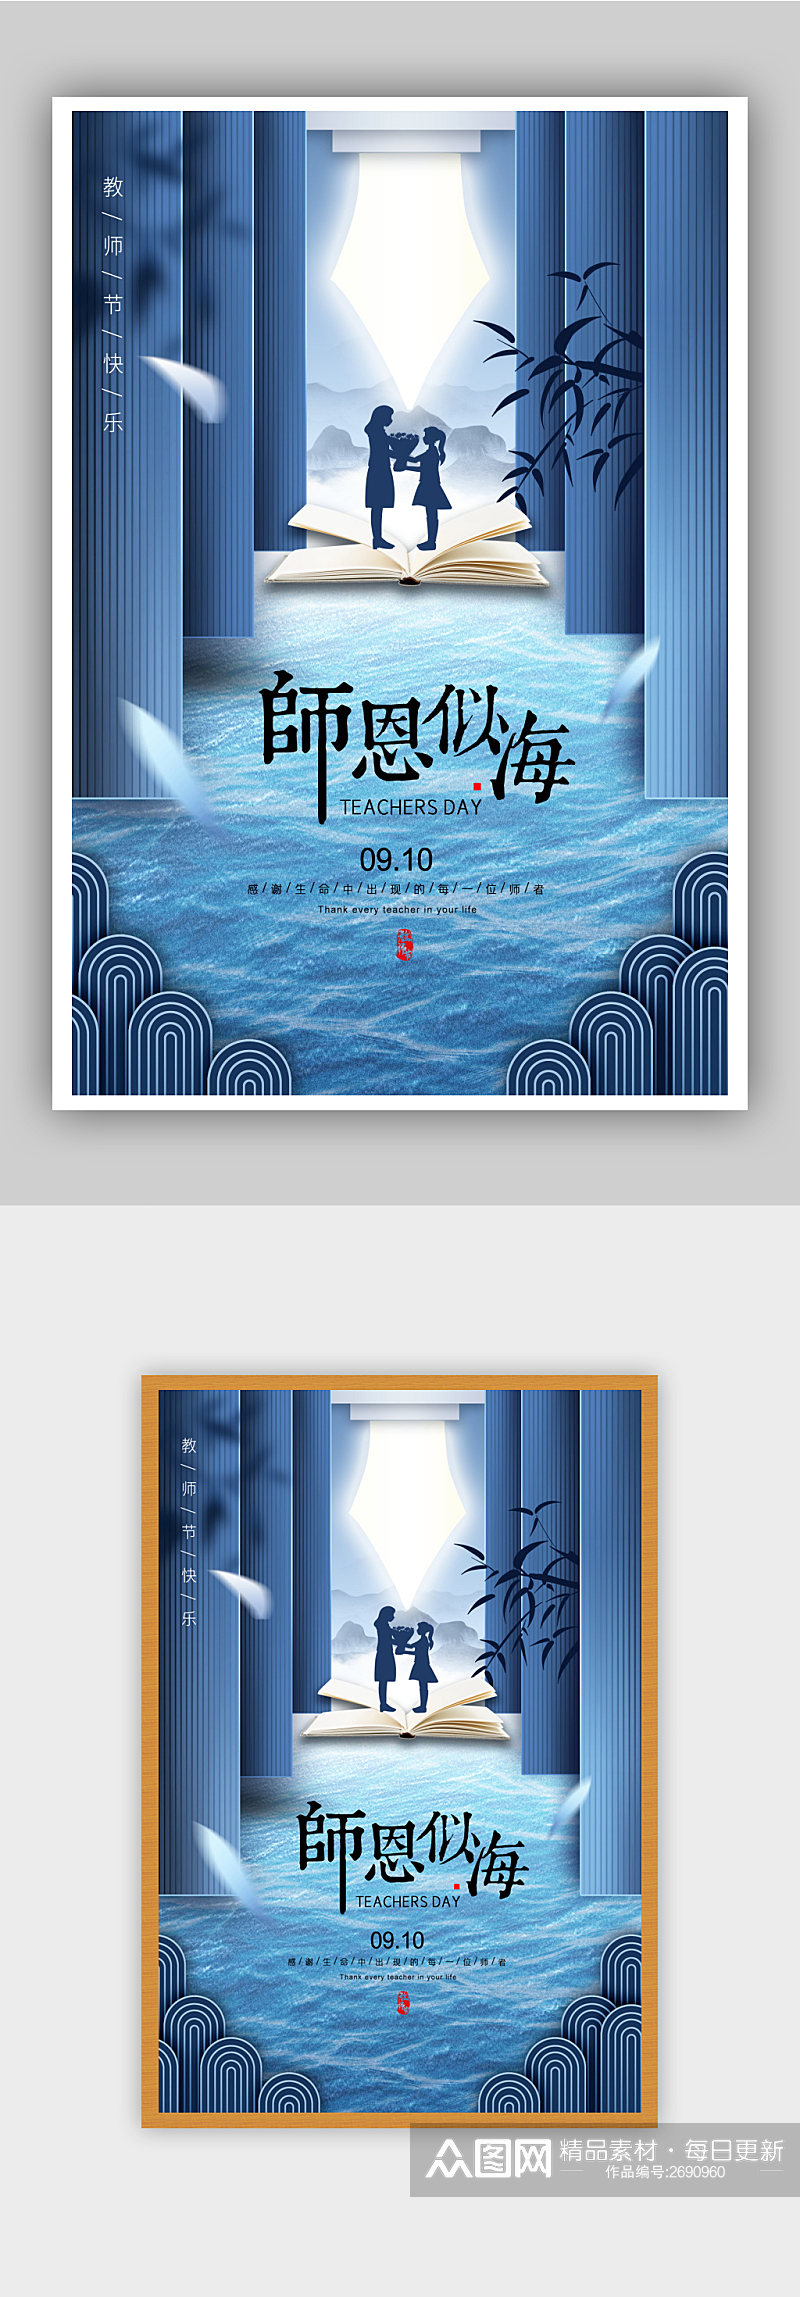 蓝色中国风教师节海报素材